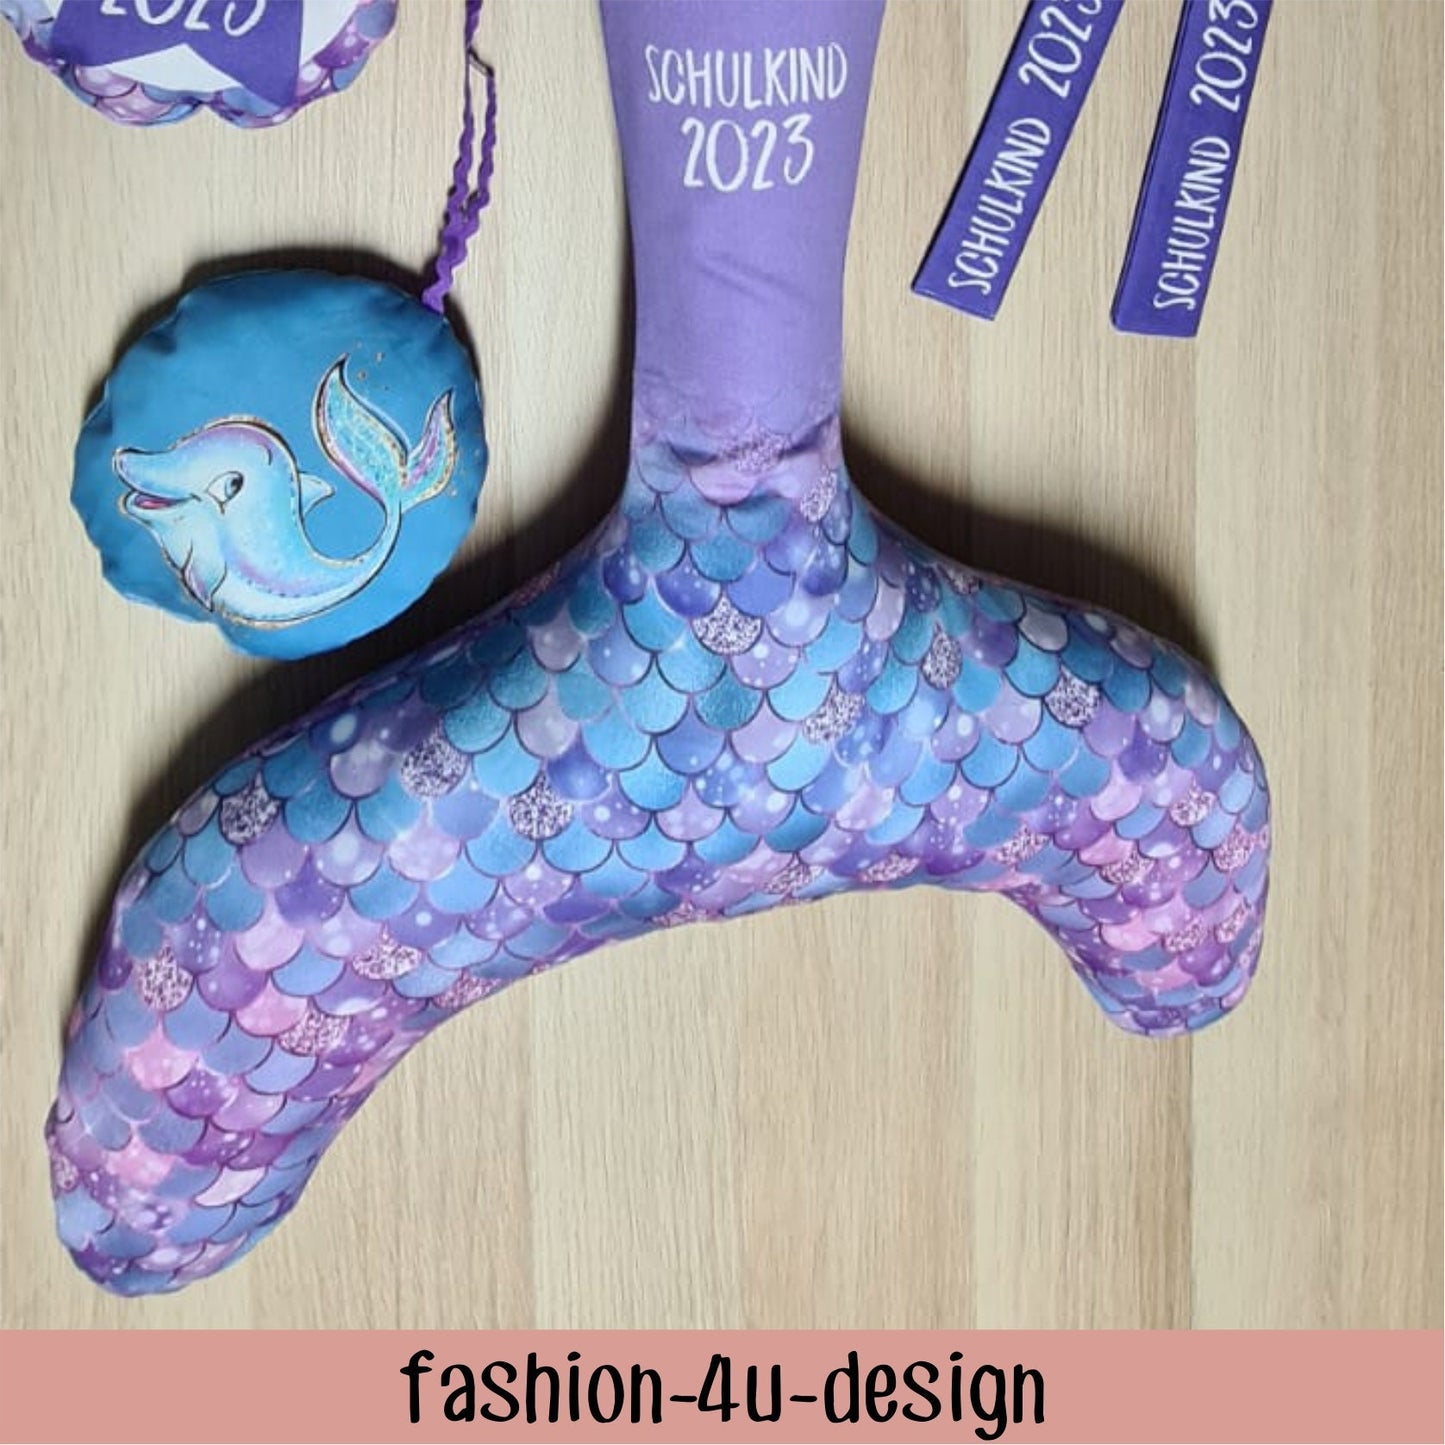 A003 Schultüte/Zuckertüte: Meerjungfrau mit Flosse - Baumwoll-Panel zum selber nähen - DIY Näh-Set 70 cm - mit Namen & Schulkind 2024